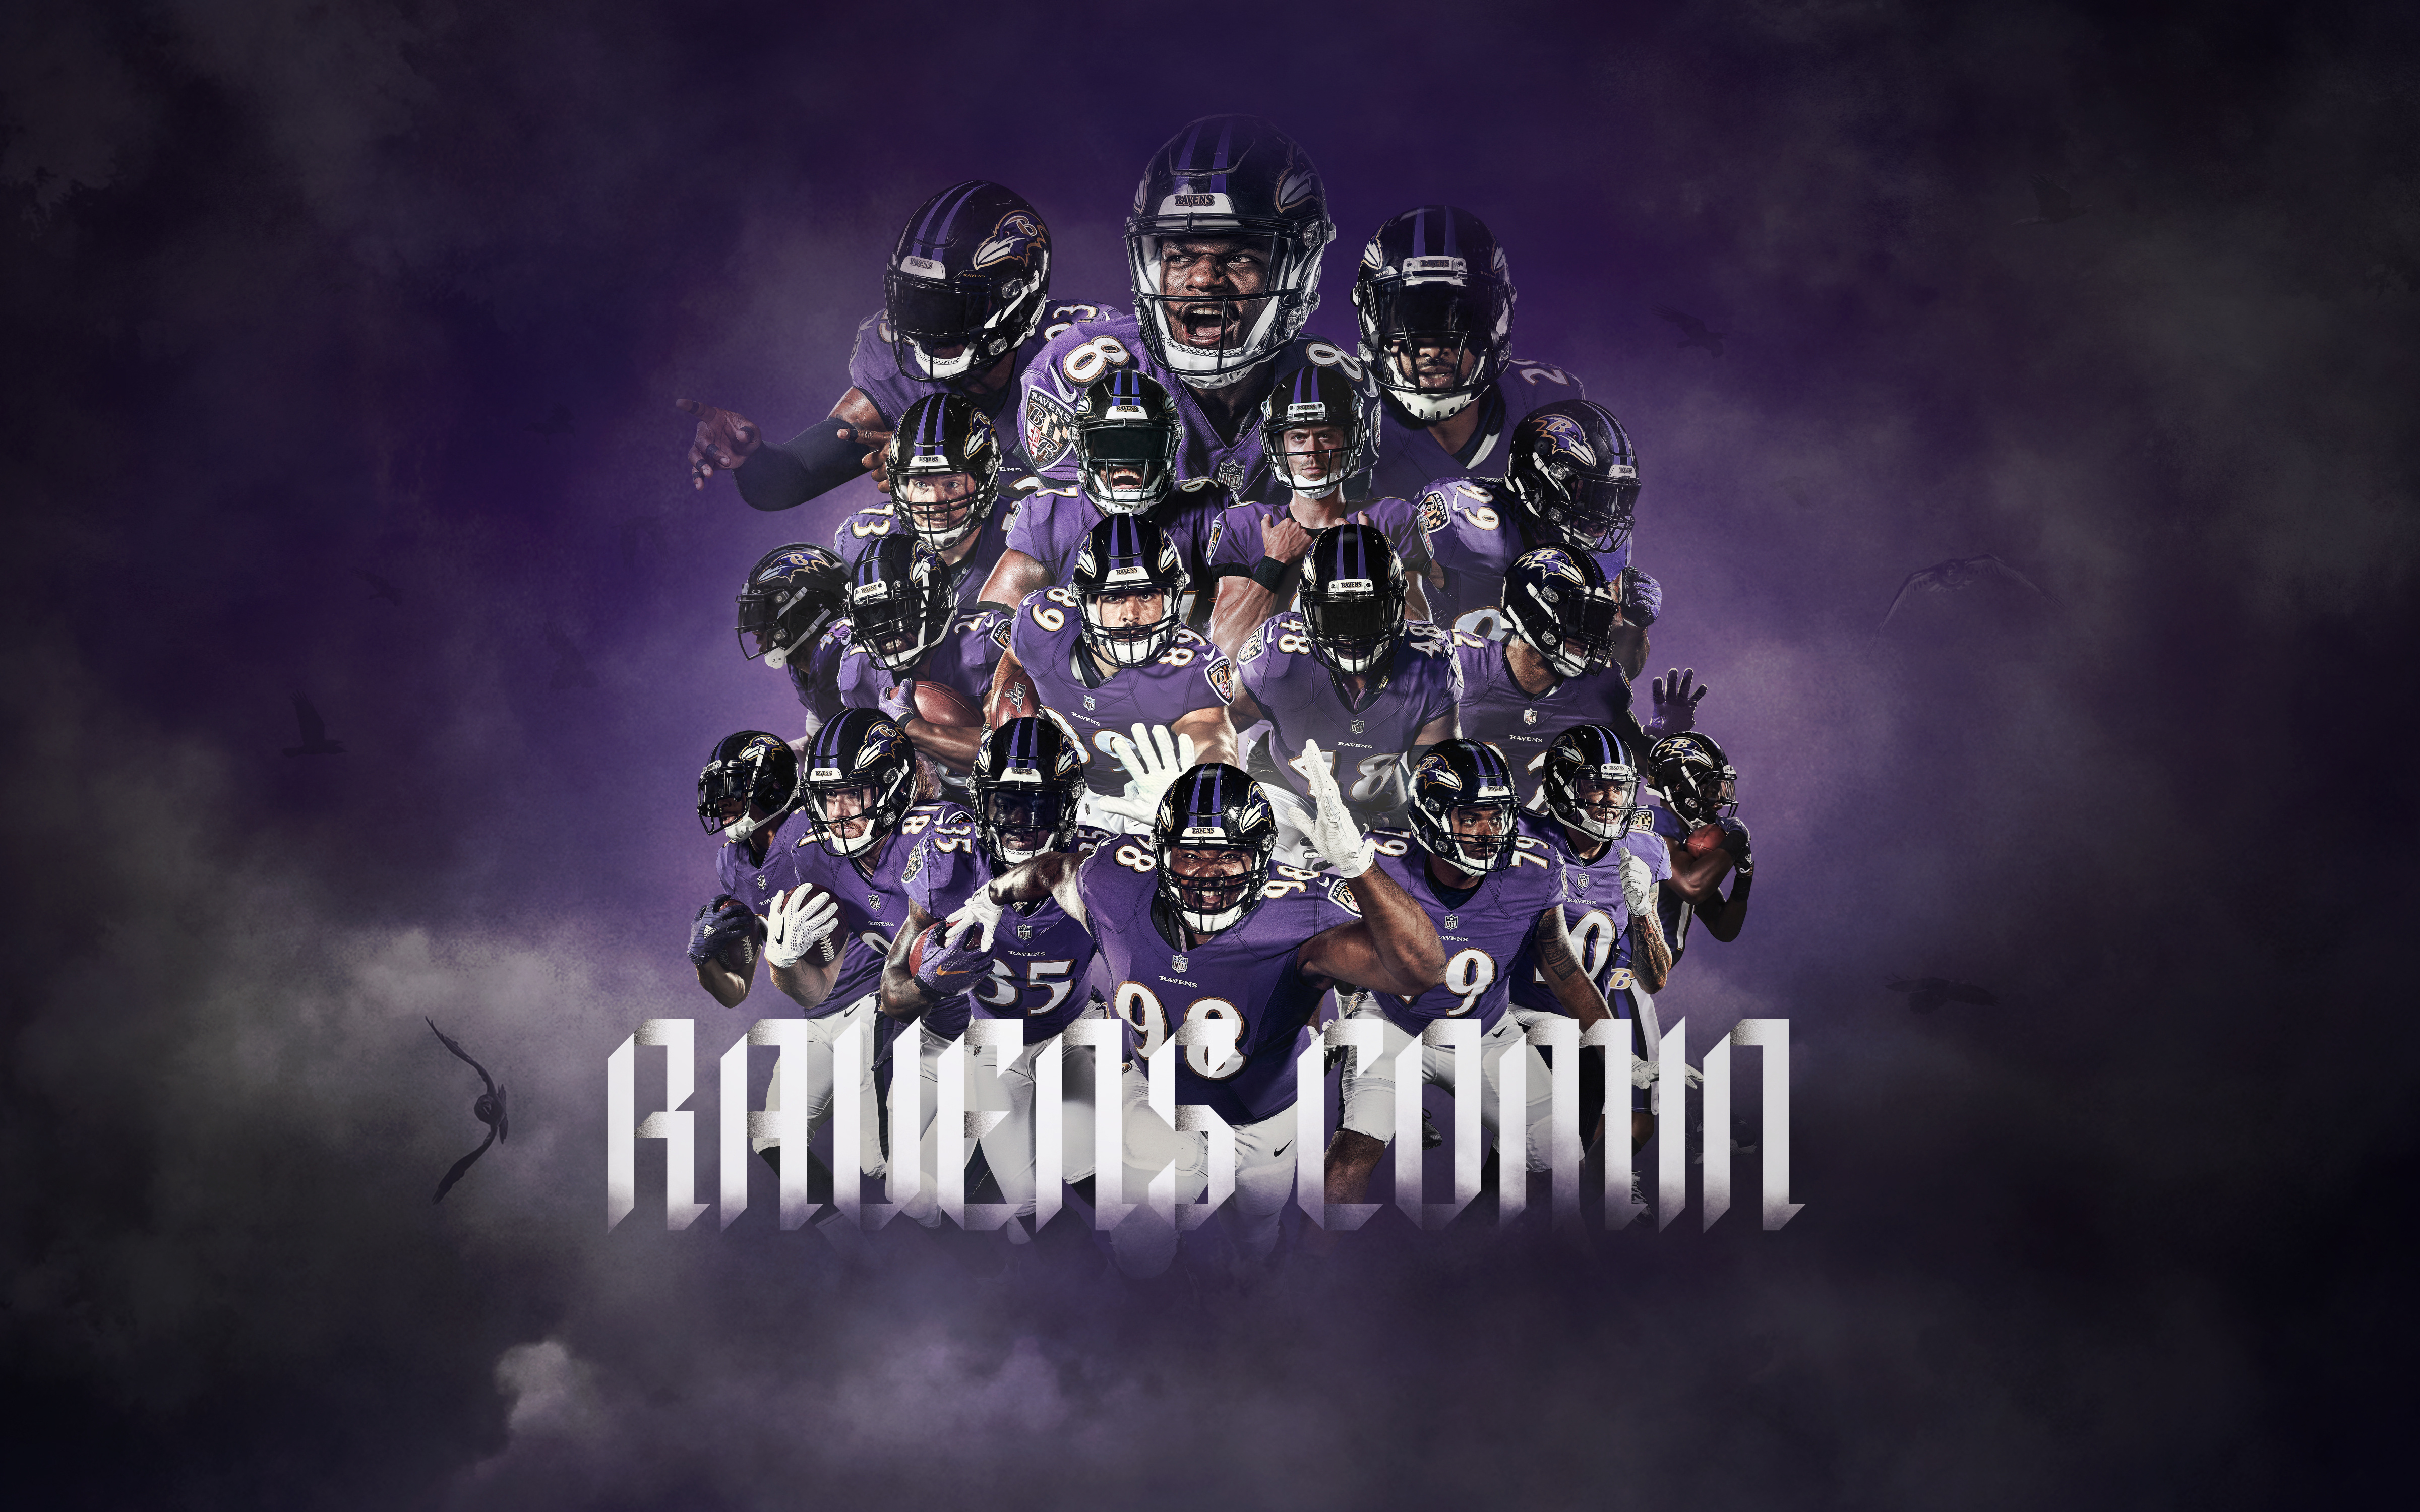 Ravens Logo Wallpaper - Baltimore Ravens Wallpaper 2019 - HD Wallpaper 